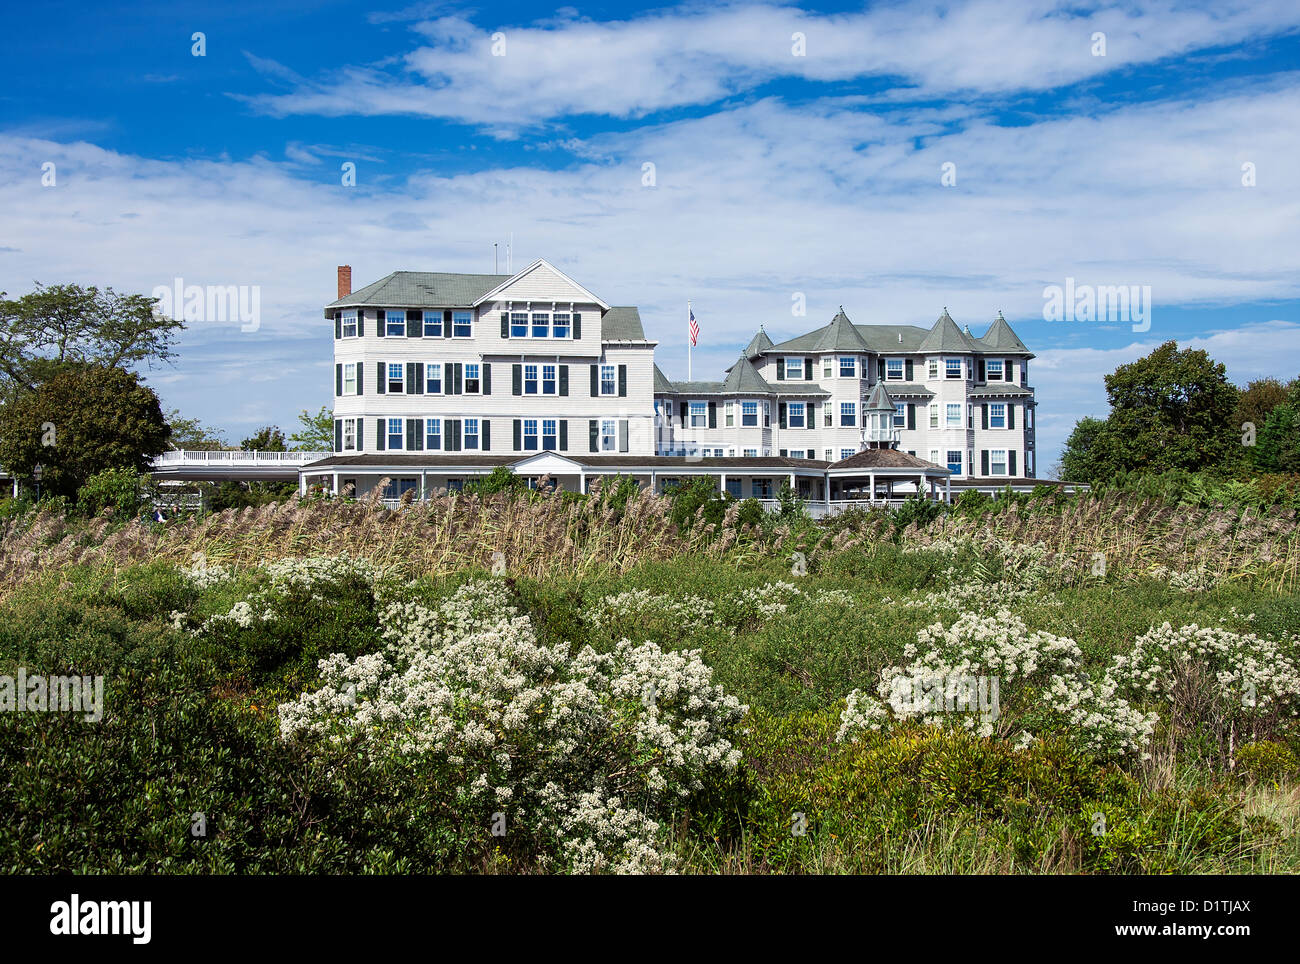 Harbor View Hotel, Edgartown, Martha's Vineyard, Massachusetts, USA Stock Photo